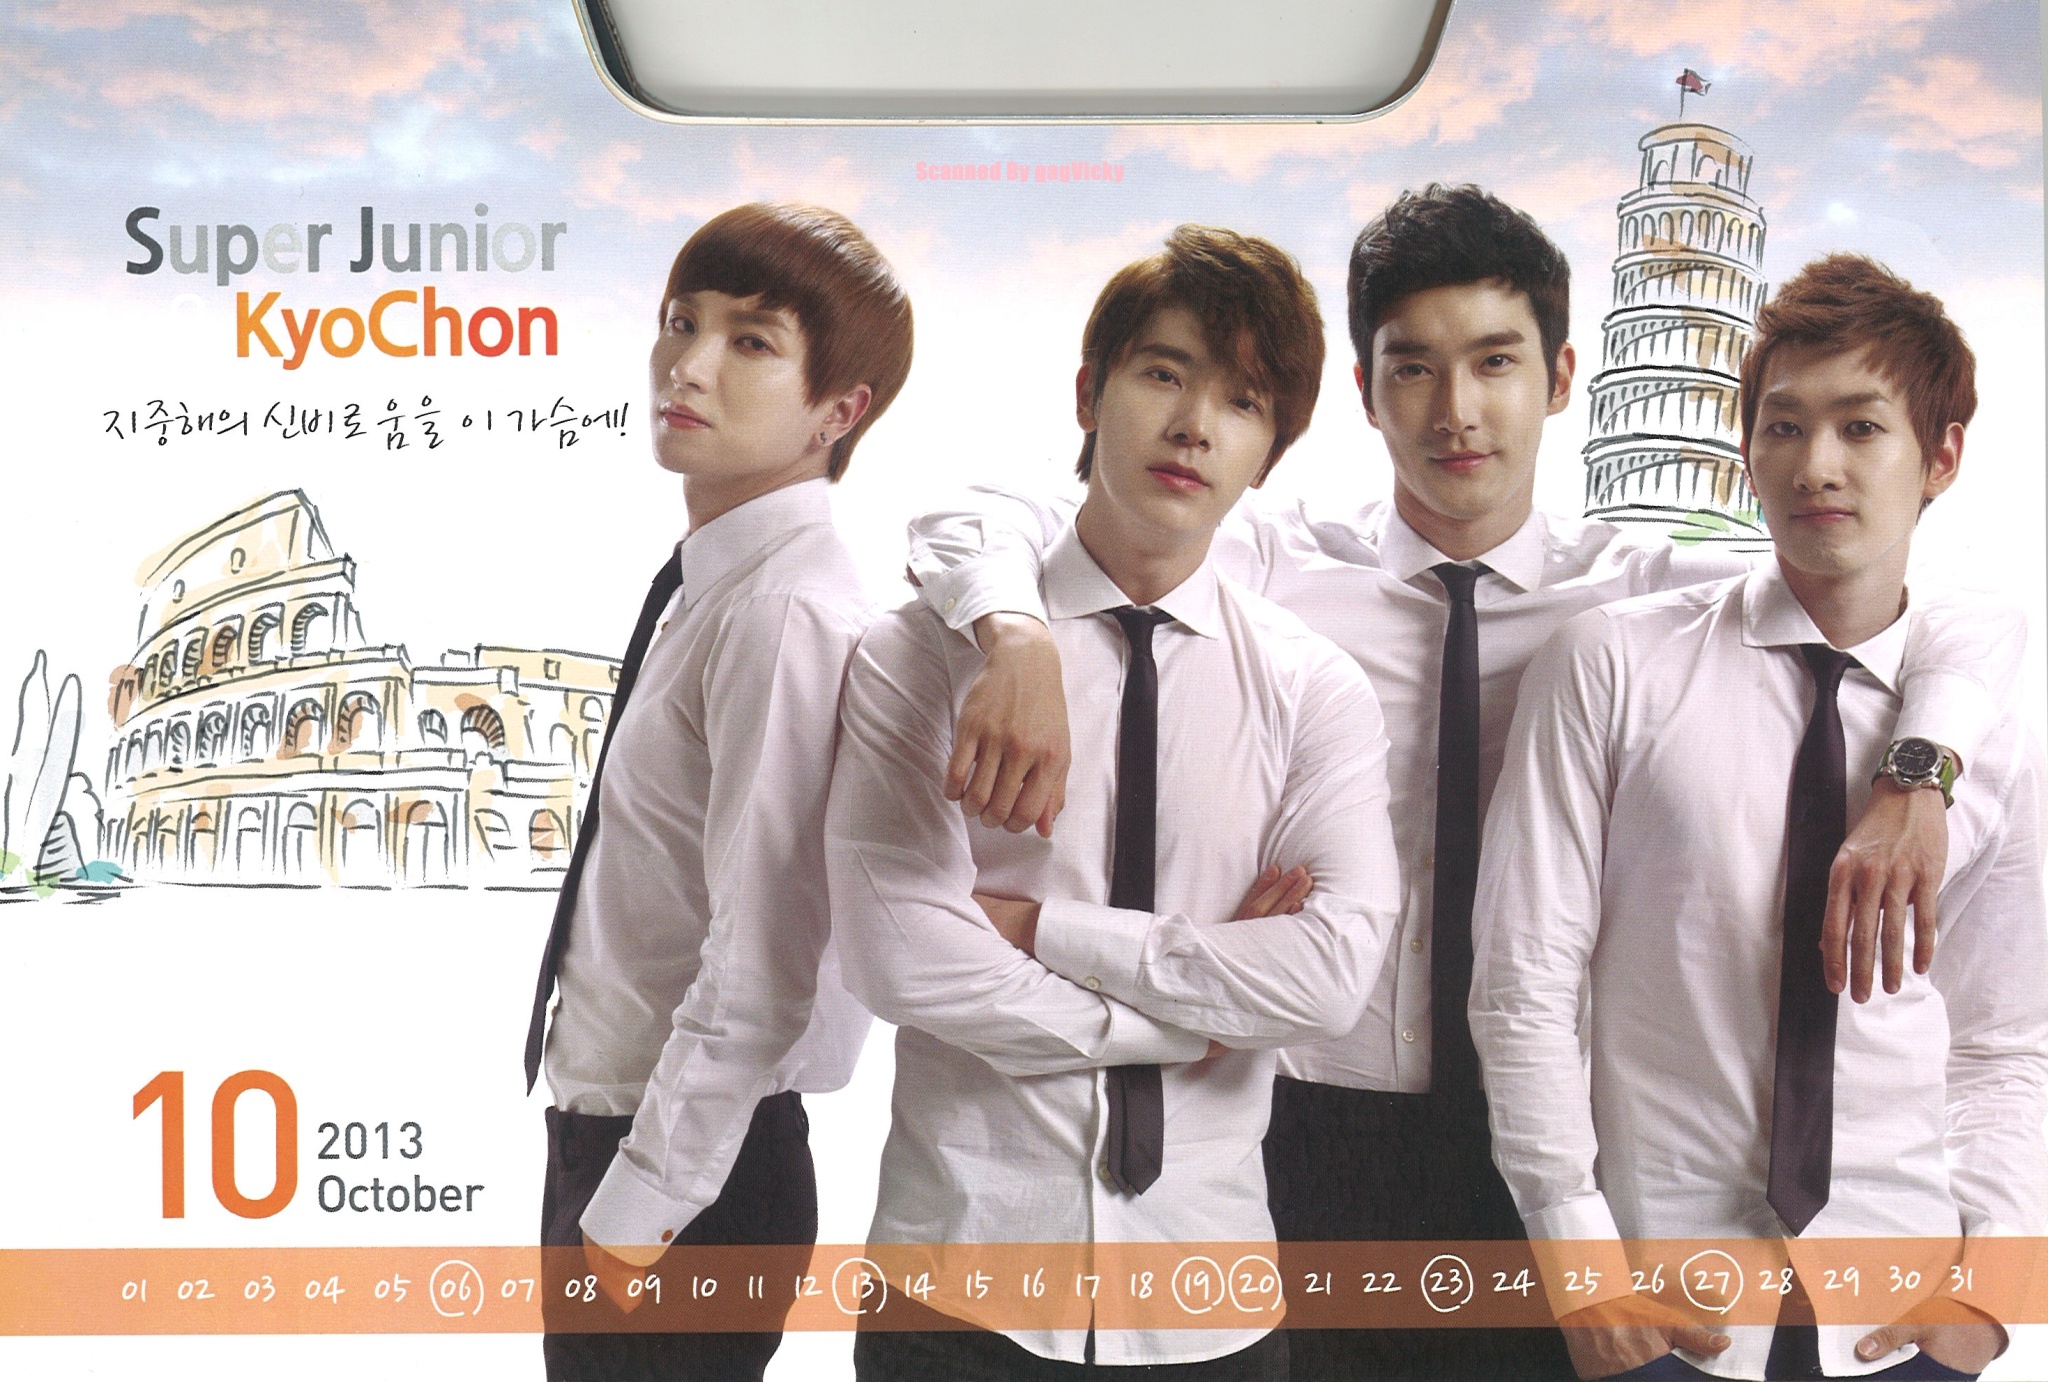 2013-Calendar-with-Super-Junior-super-junior-33172908-2048-1382.jpg